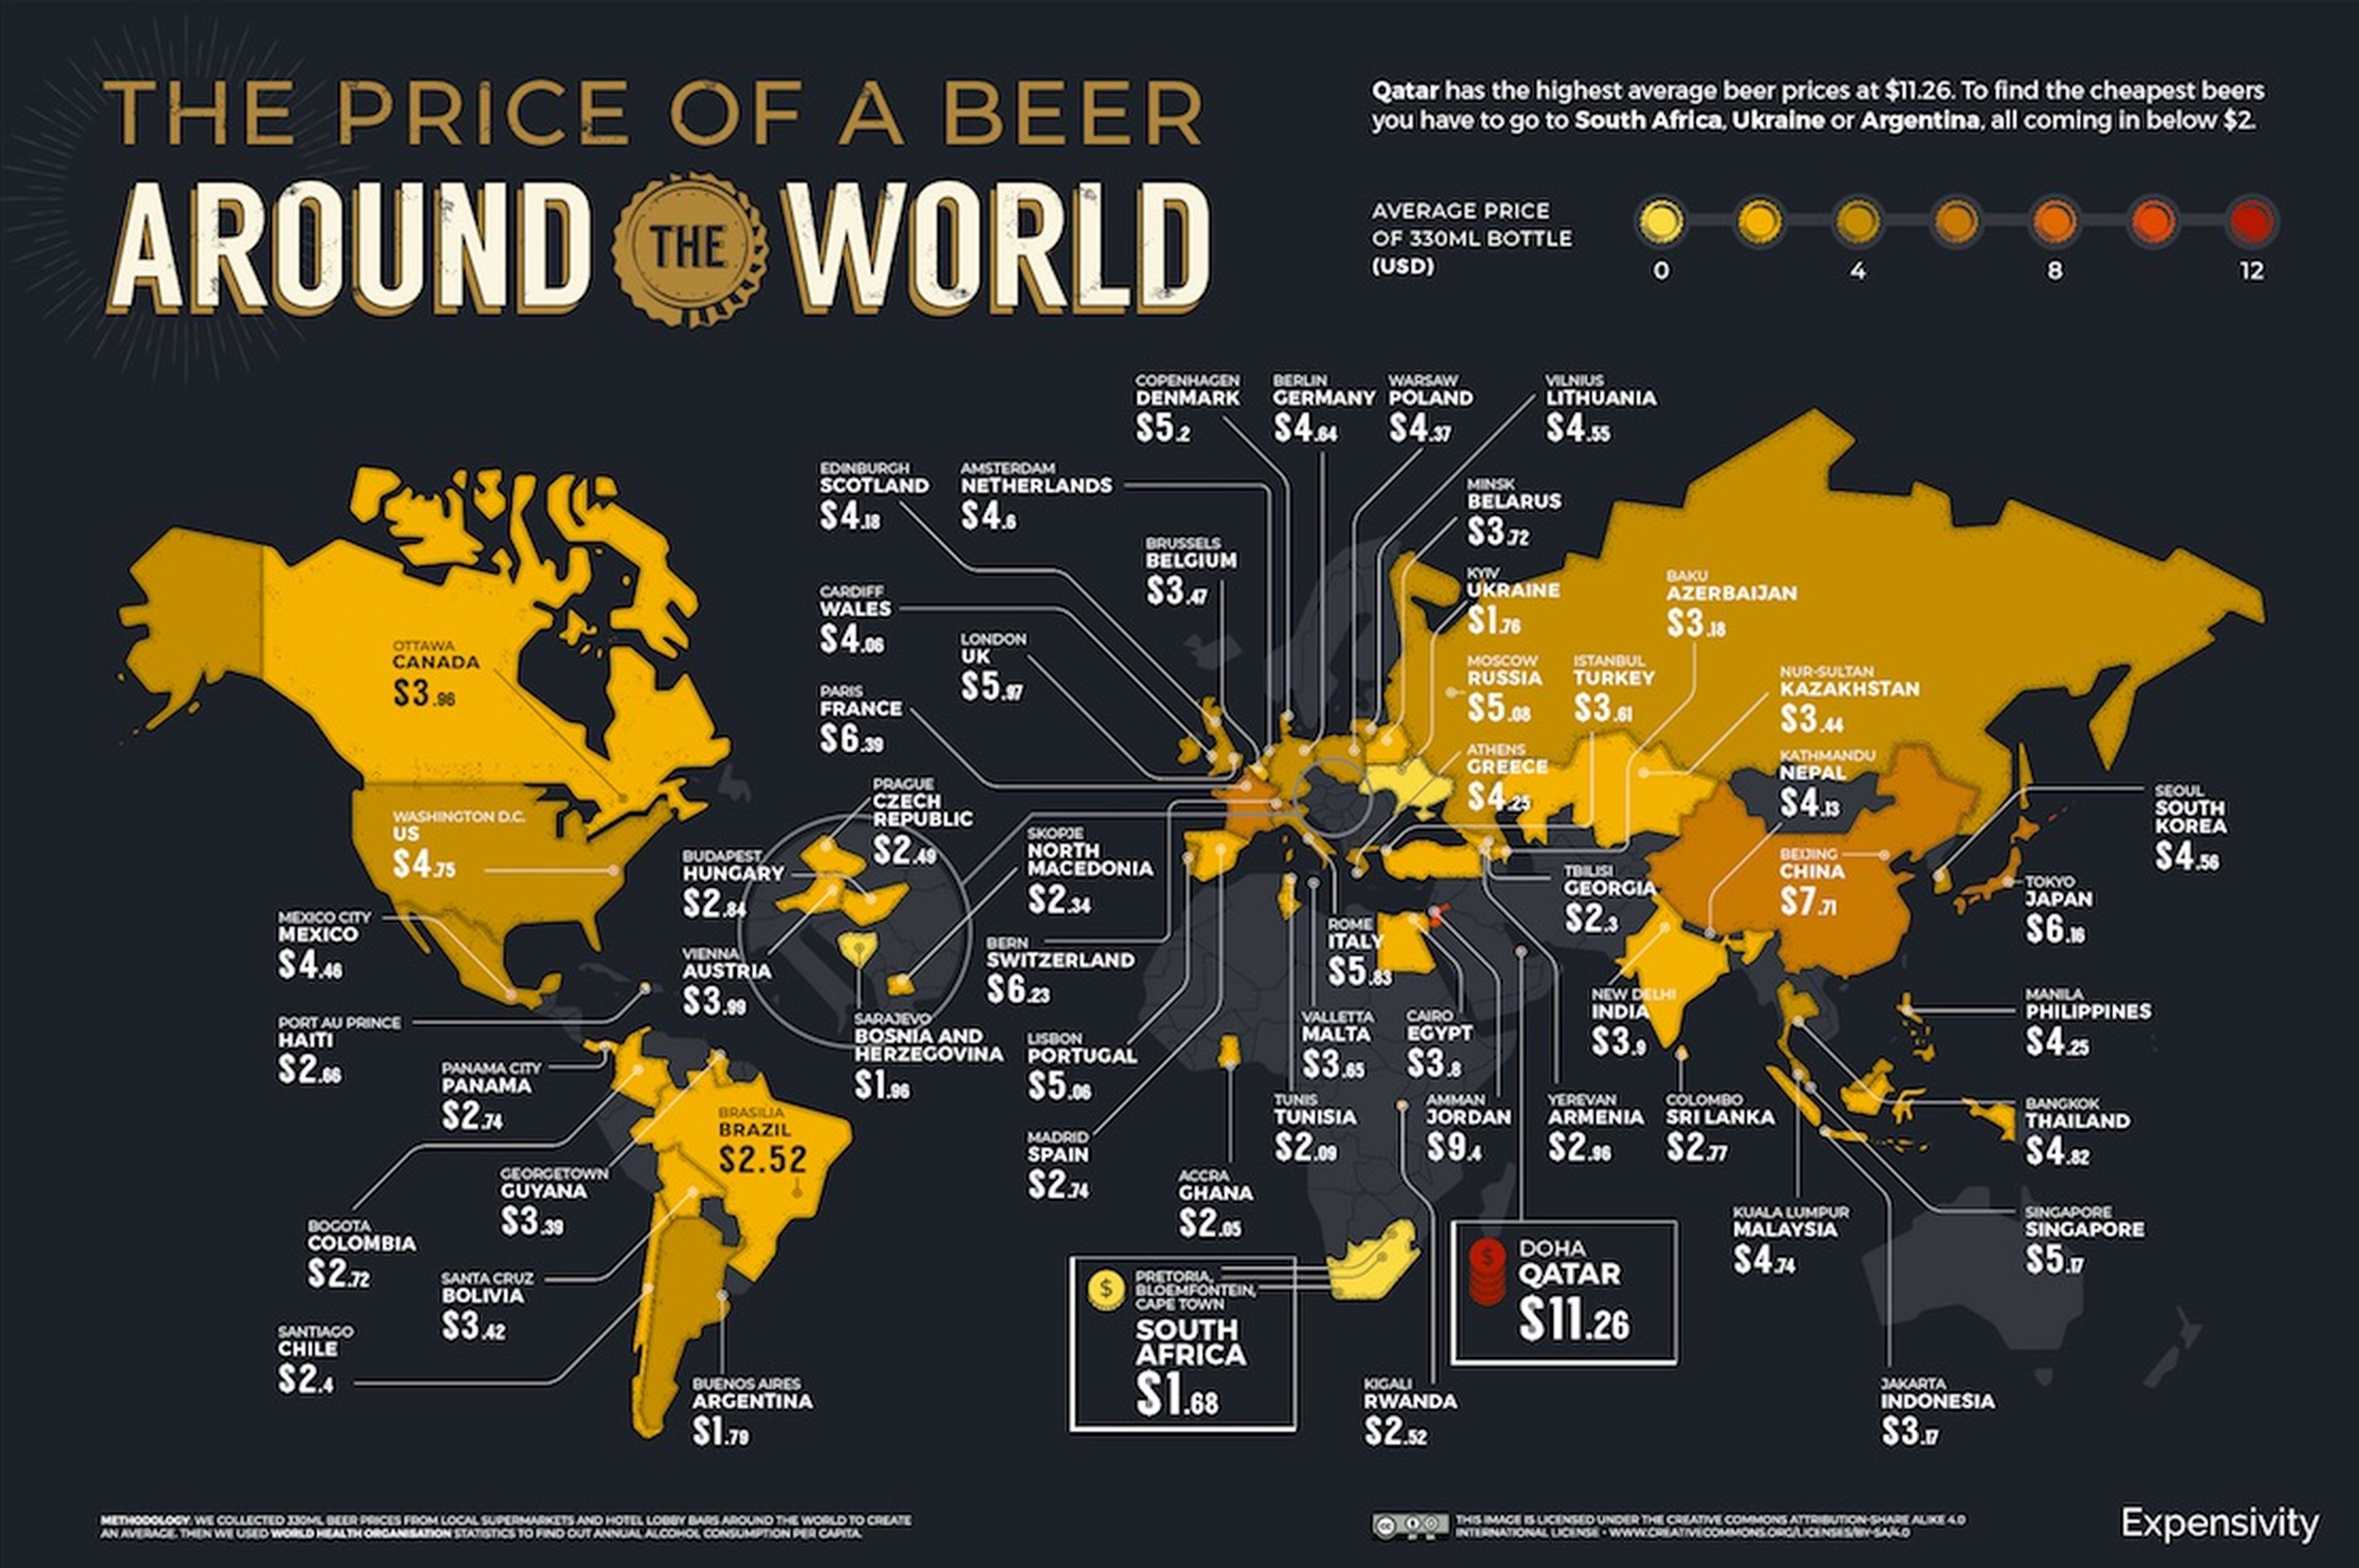 El gráfico muestra el precio de una botella de cerveza de 330 ml en los 58 países indicados.